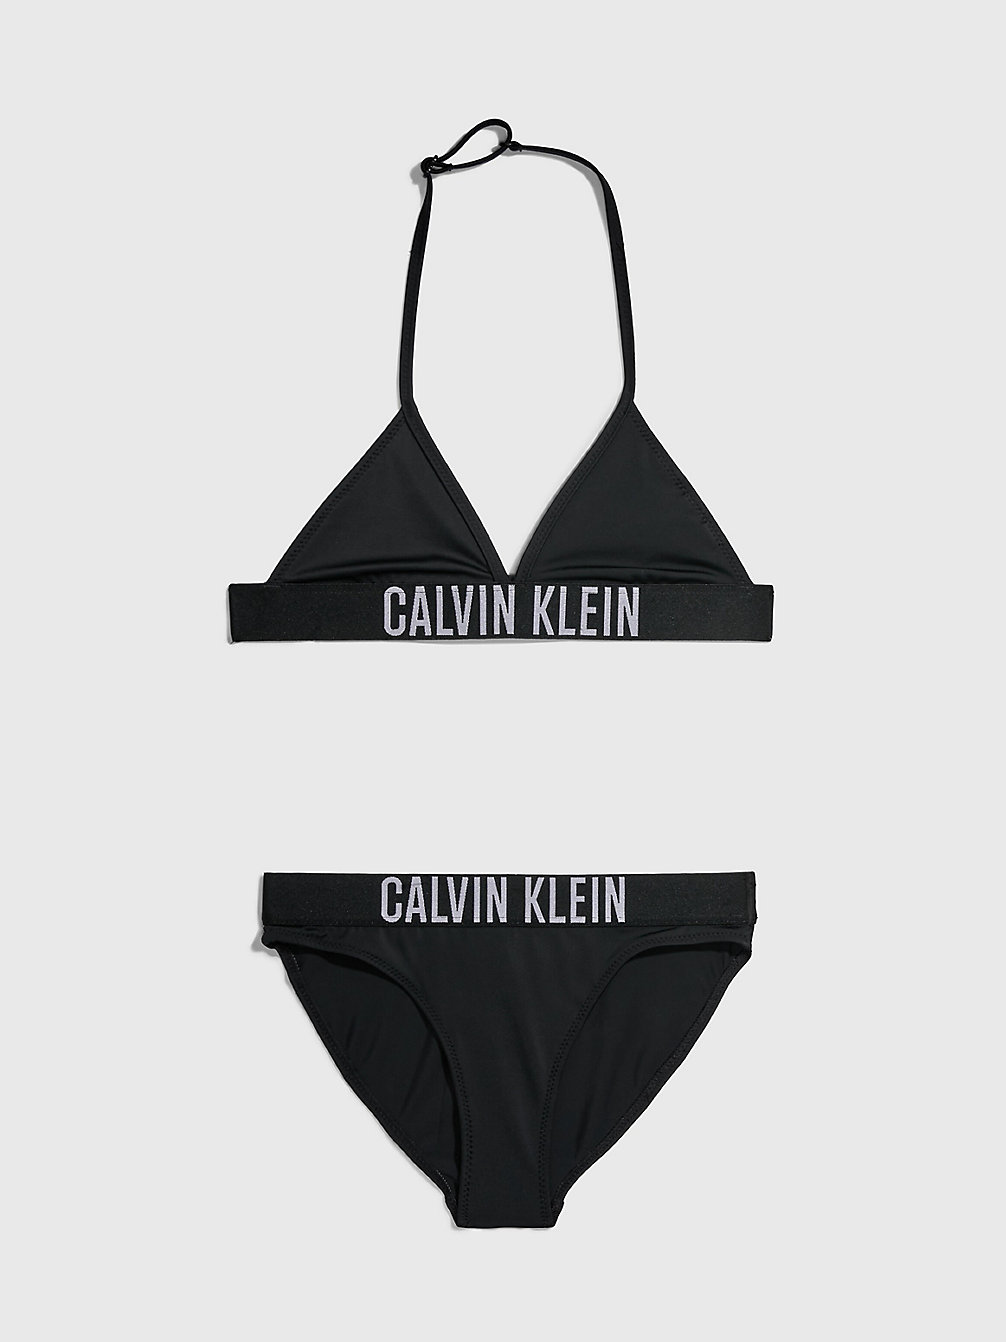 PVH BLACK > Triangelbikini Voor Meisjes - Intense Power > undefined girls - Calvin Klein